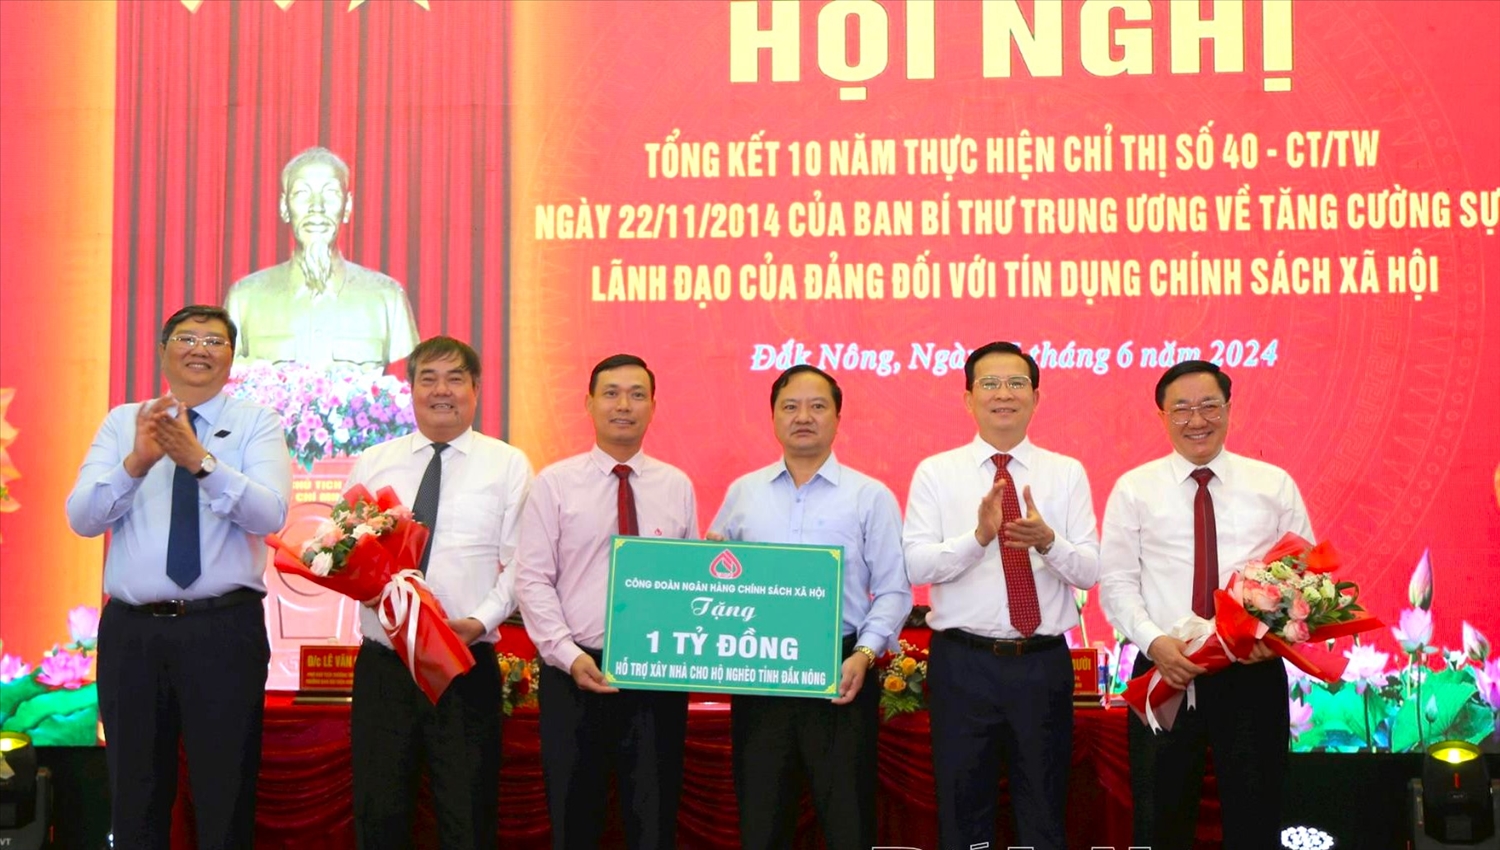 Tại Hội nghị, Công đoàn NHCSXH Việt Nam đã trao tặng 1 tỷ đồng hỗ trợ xây dựng nhà ở cho hộ nghèo tại Đắk Nông.